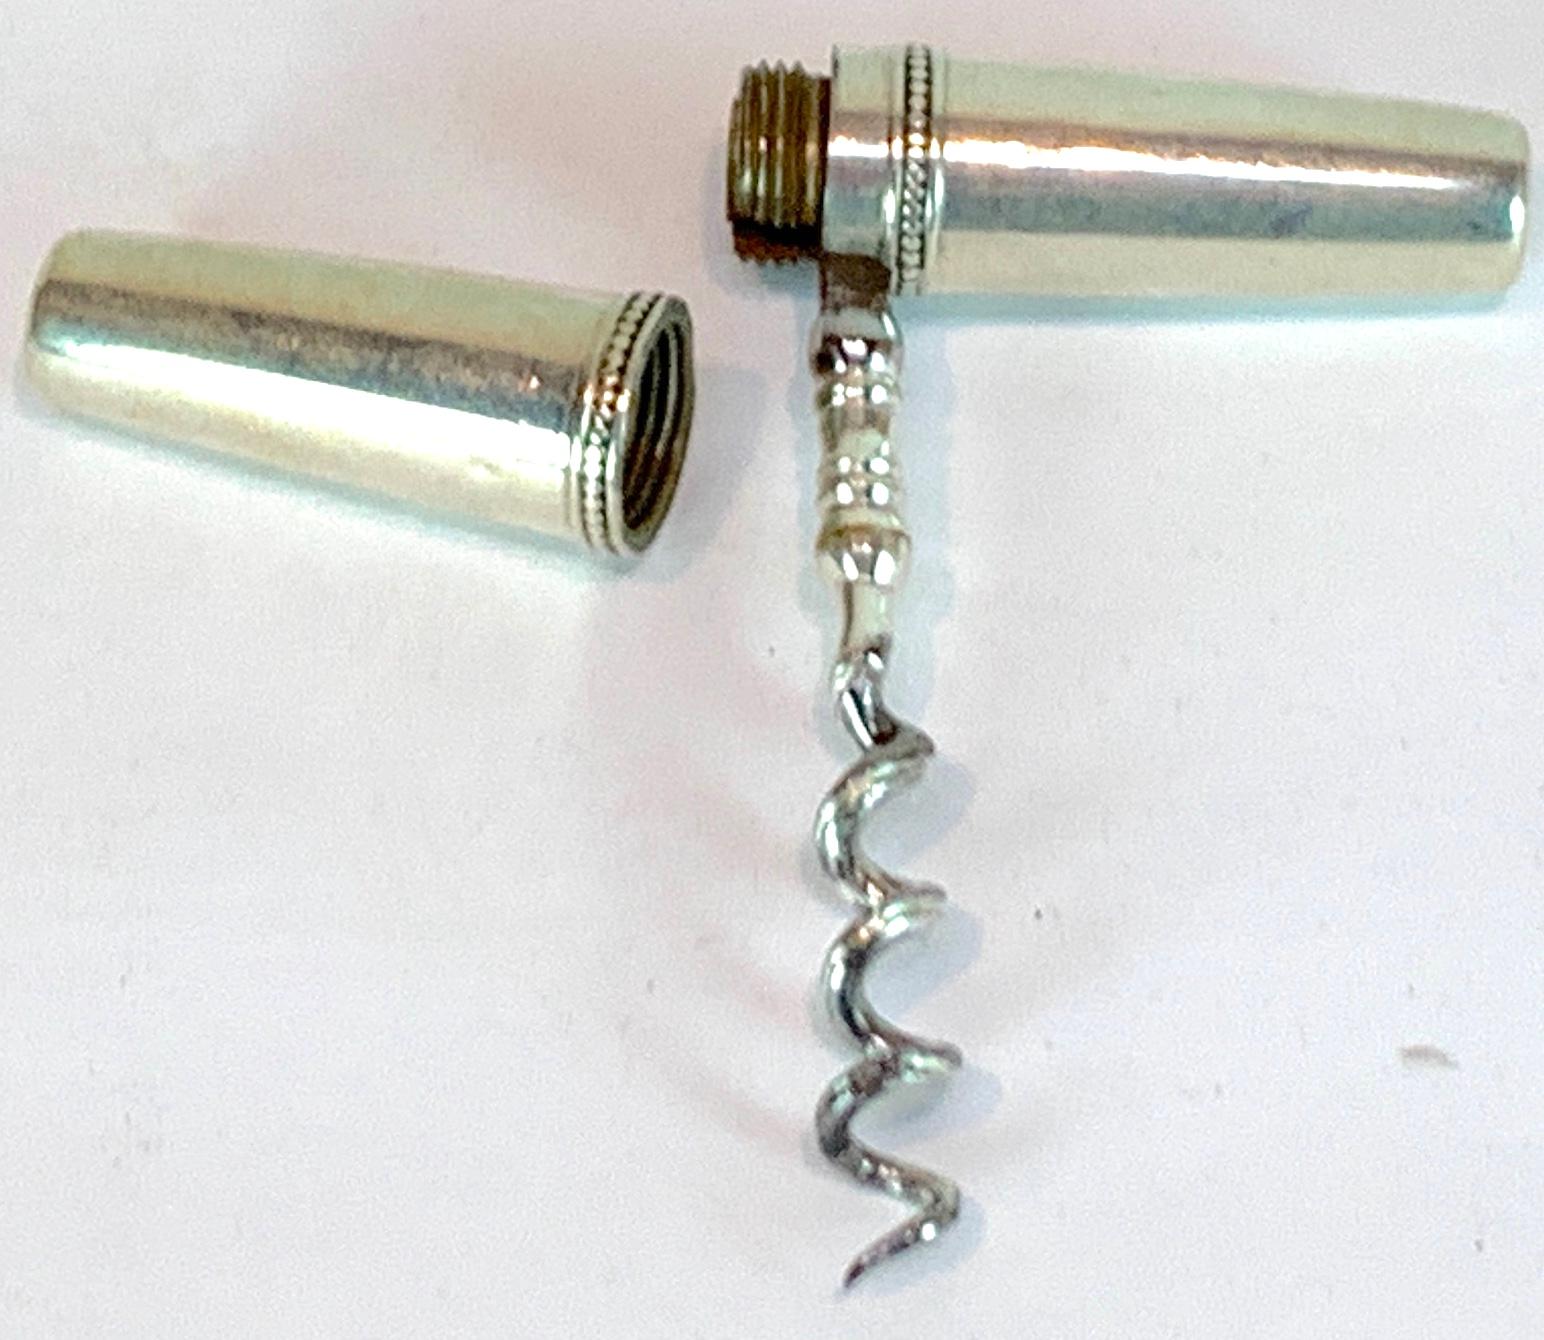 makeshift corkscrew